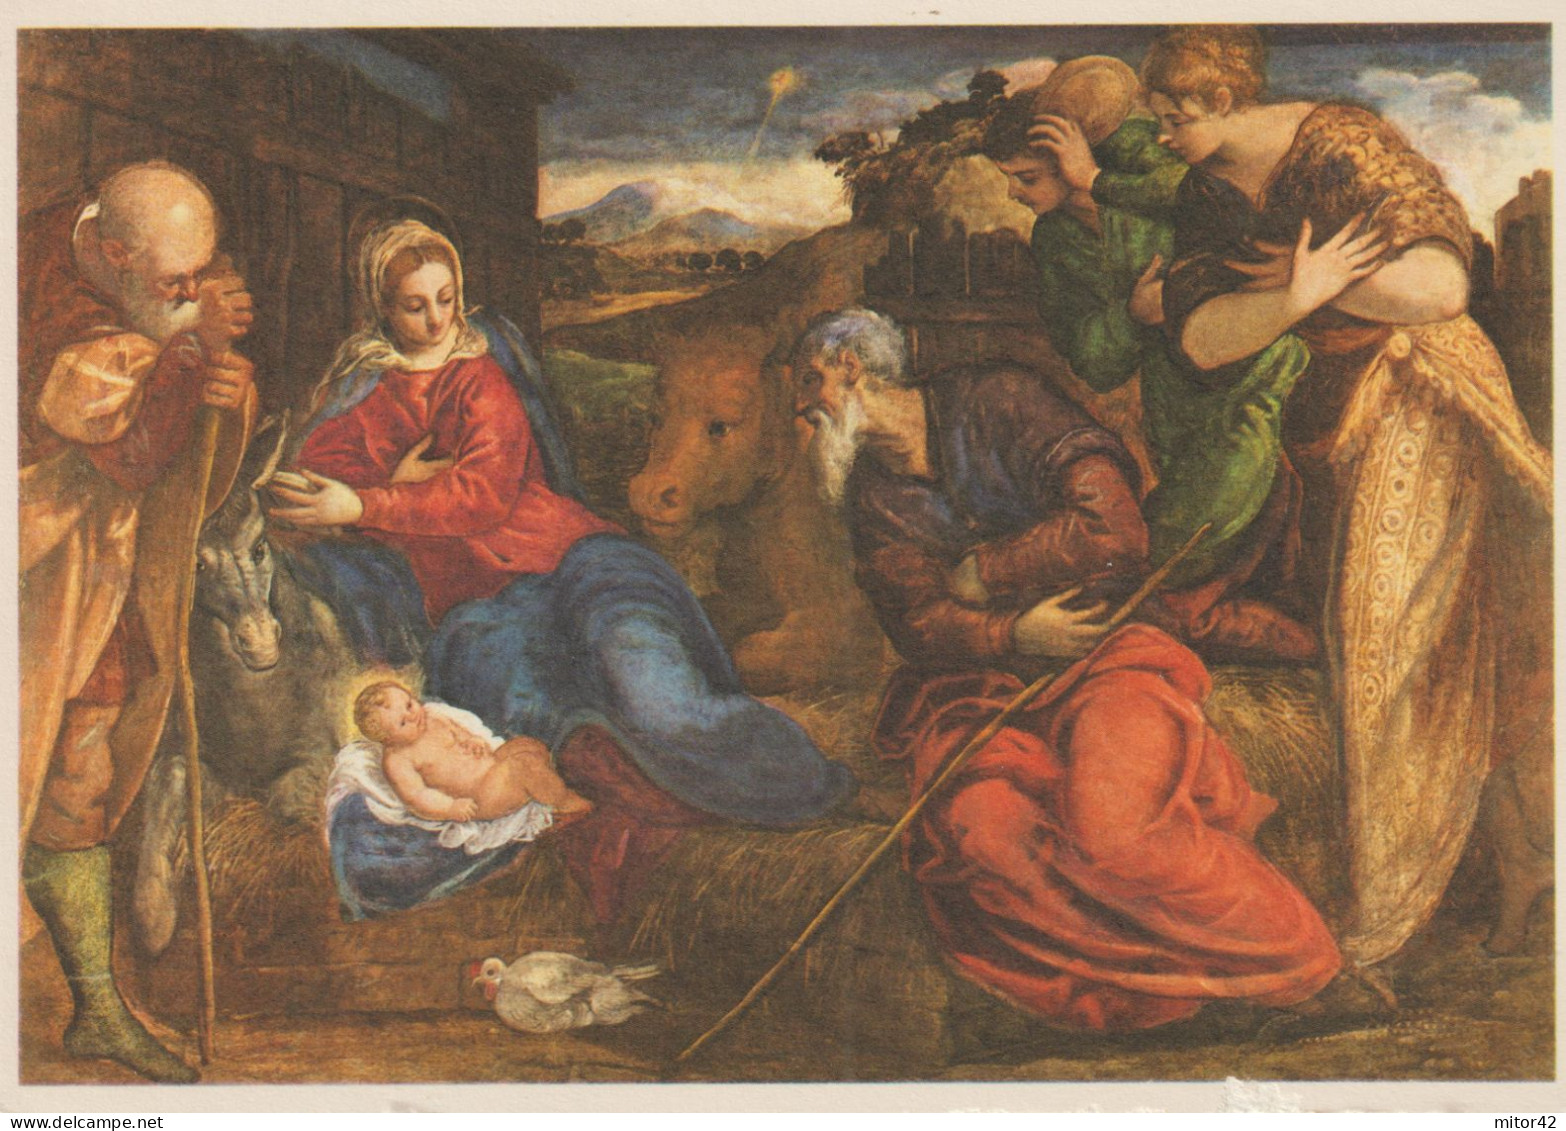 184-Religione-Cristianesimo-Presepe-La Natività-Tintoretto-Verona-Museo Di Castelvecchio - Jésus